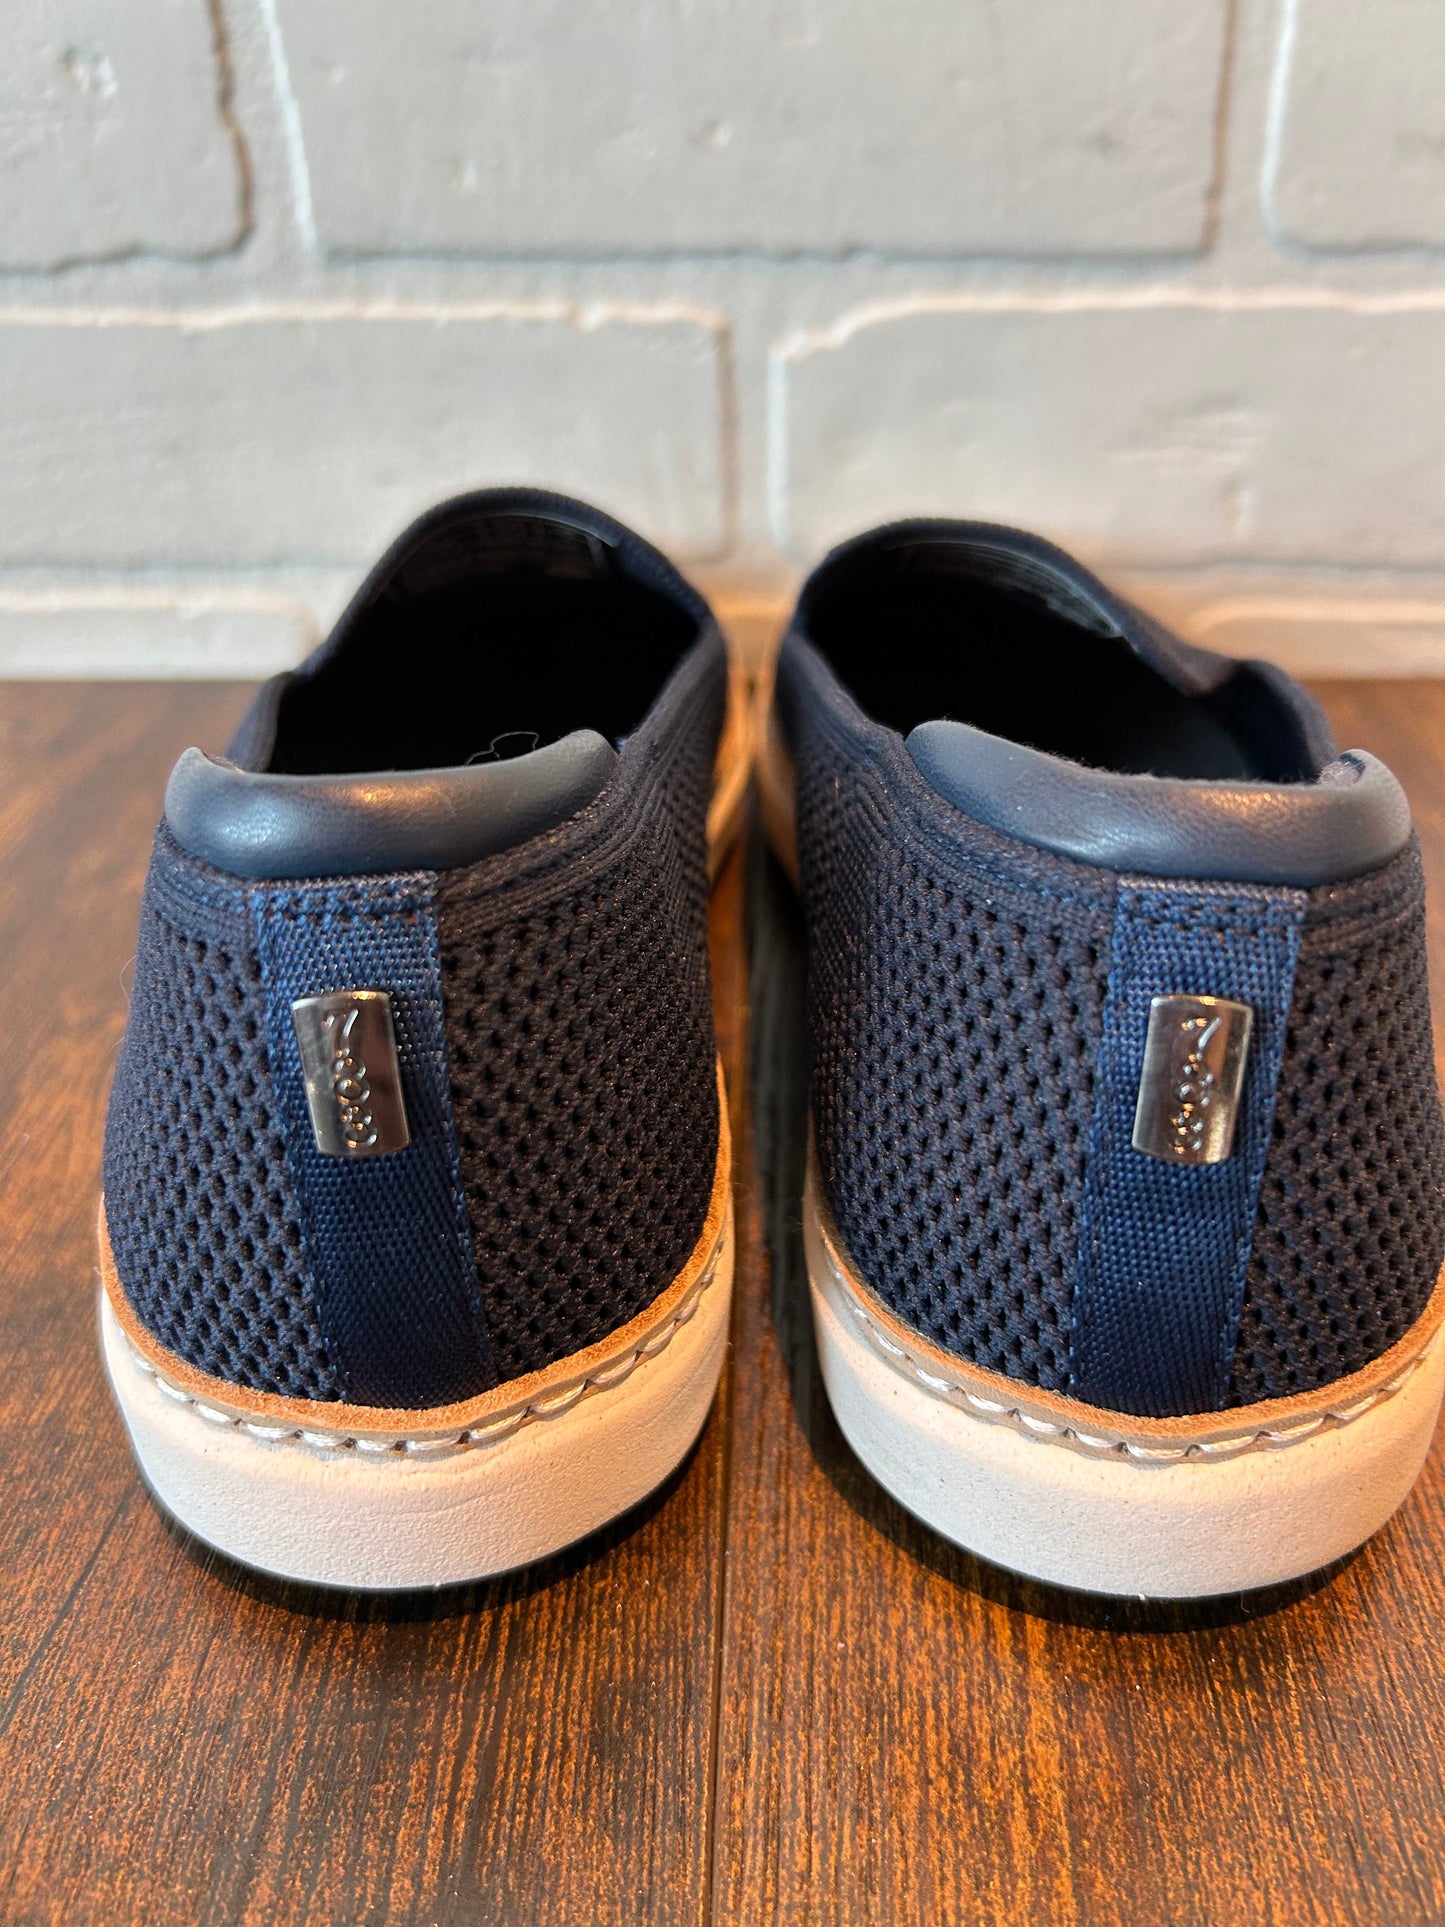 Blue Shoes Flats Clothes Mentor, Size 7.5